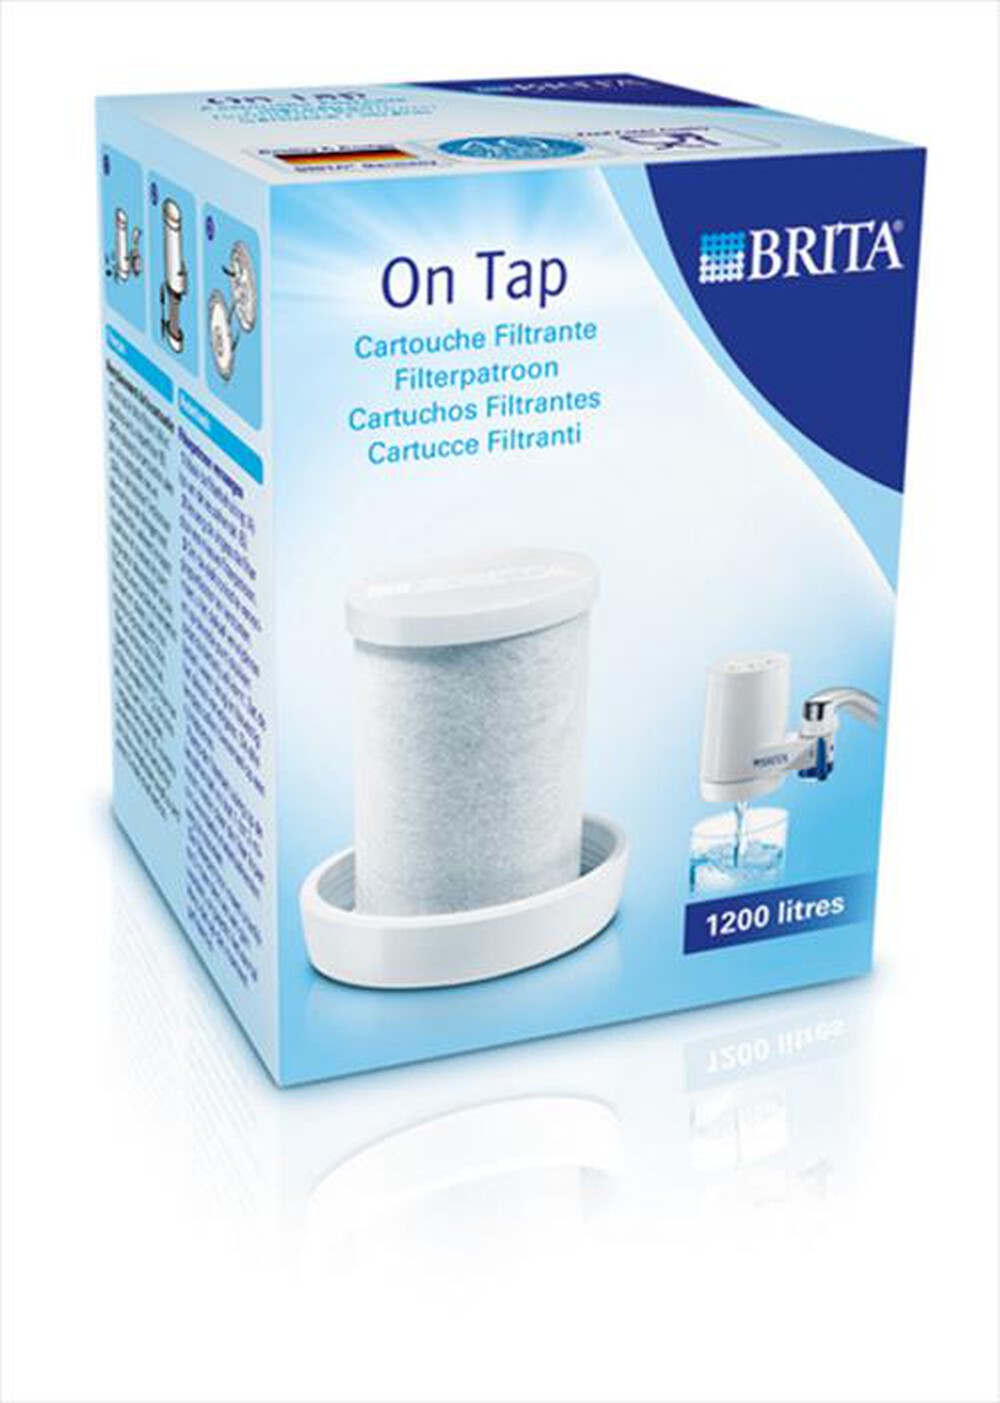 "BRITA - On Tap Filter Cartridge - "